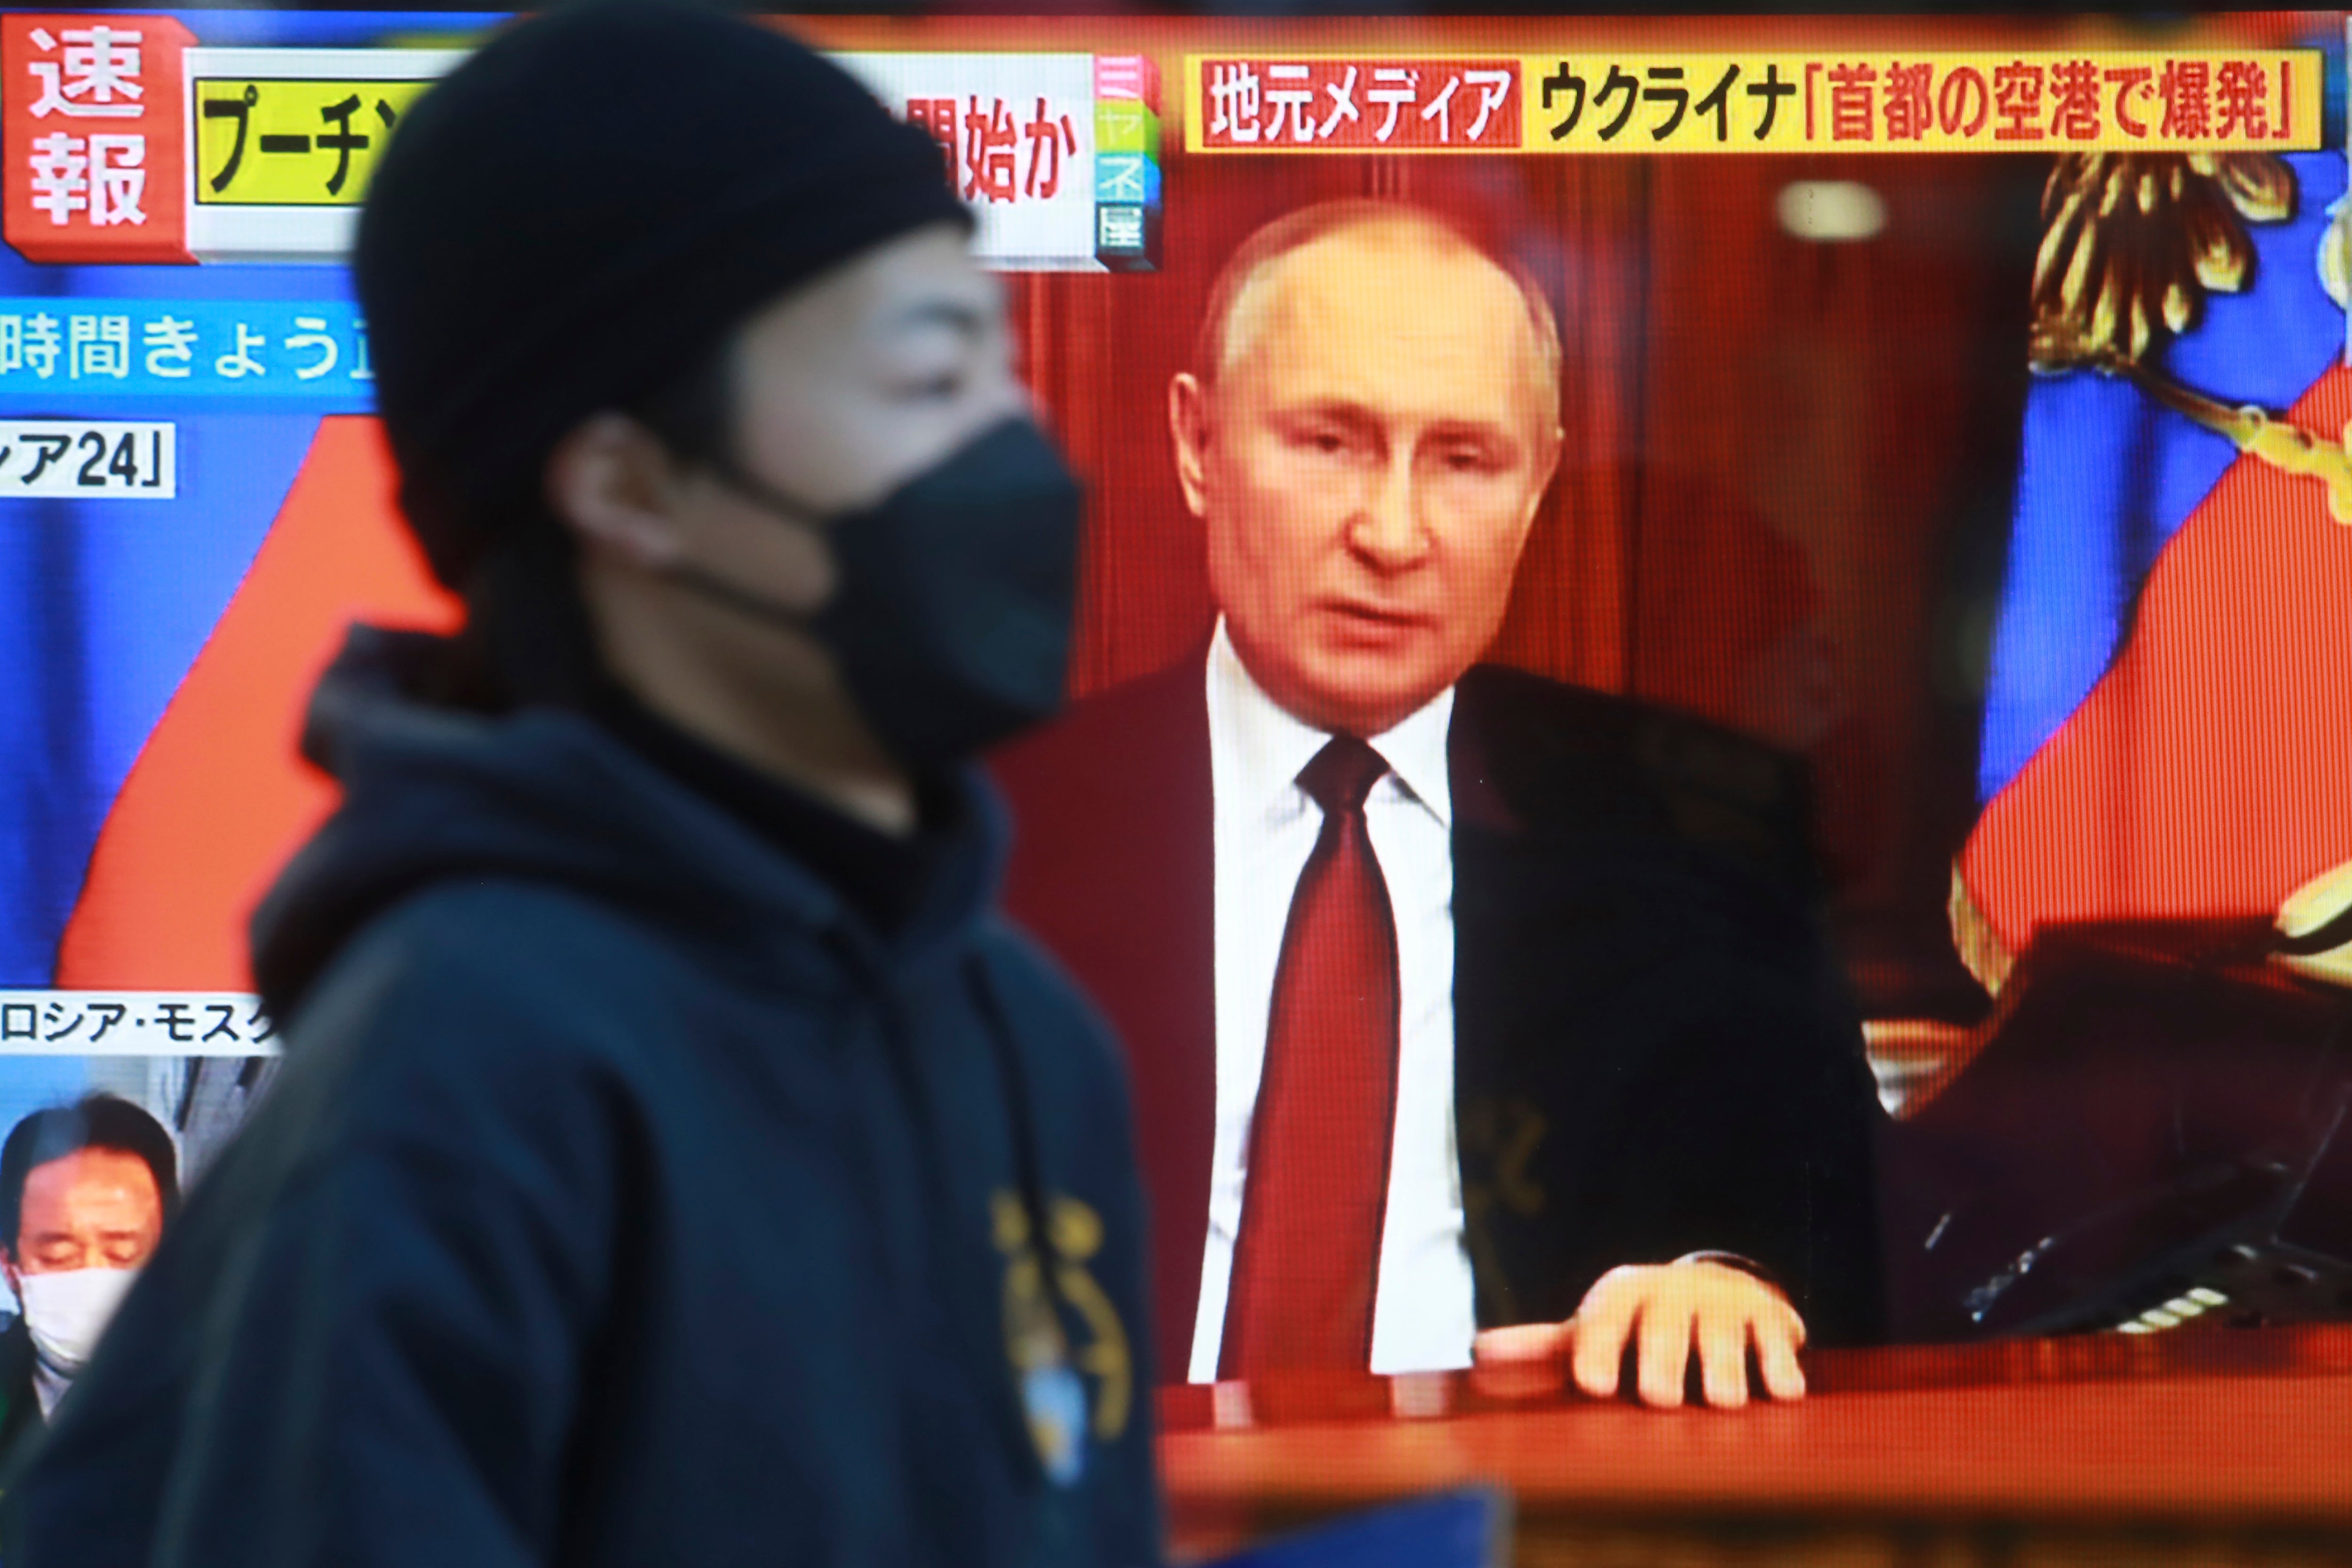 Archivo: un hombre pasa por delante de una pantalla de televisión con la imagen del presidente de Rusia, Vladimir Putin, en Tokio, el jueves 24 de febrero de 2022